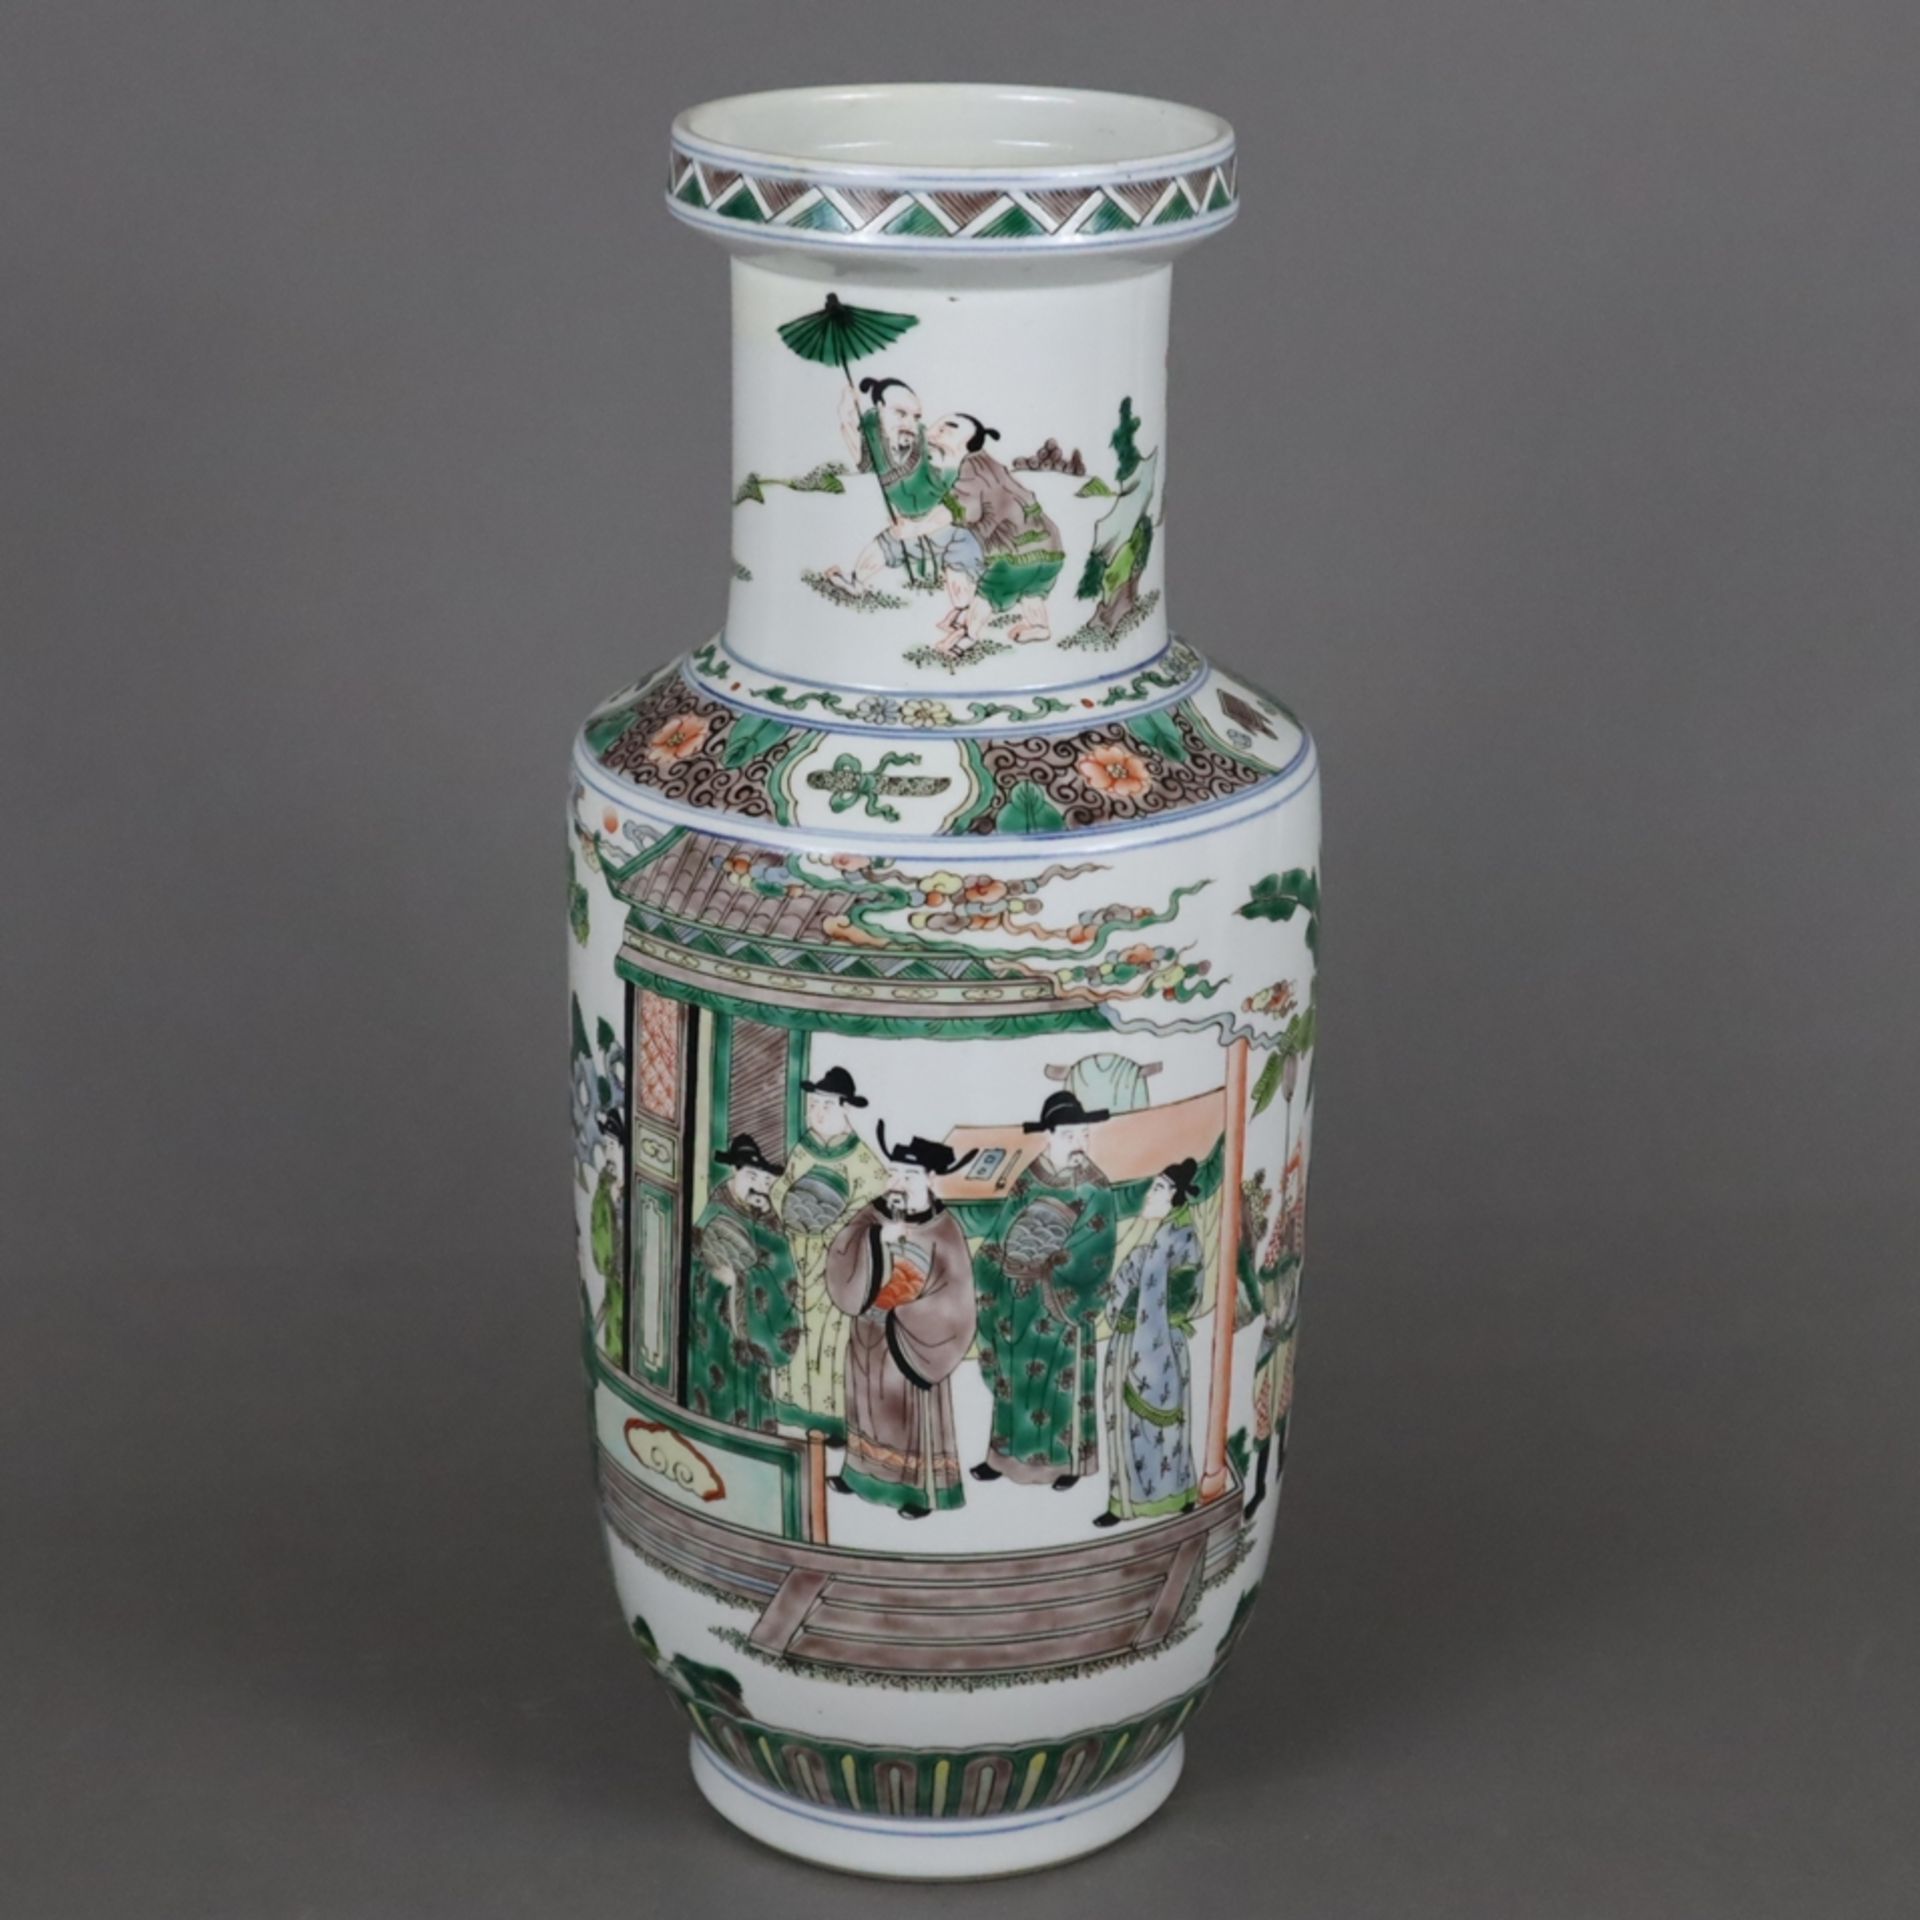 Rouleauvase im Kangxi-Stil - Porzellan. über rundem Standring zylindrischer Korpus mit abgesetzter 